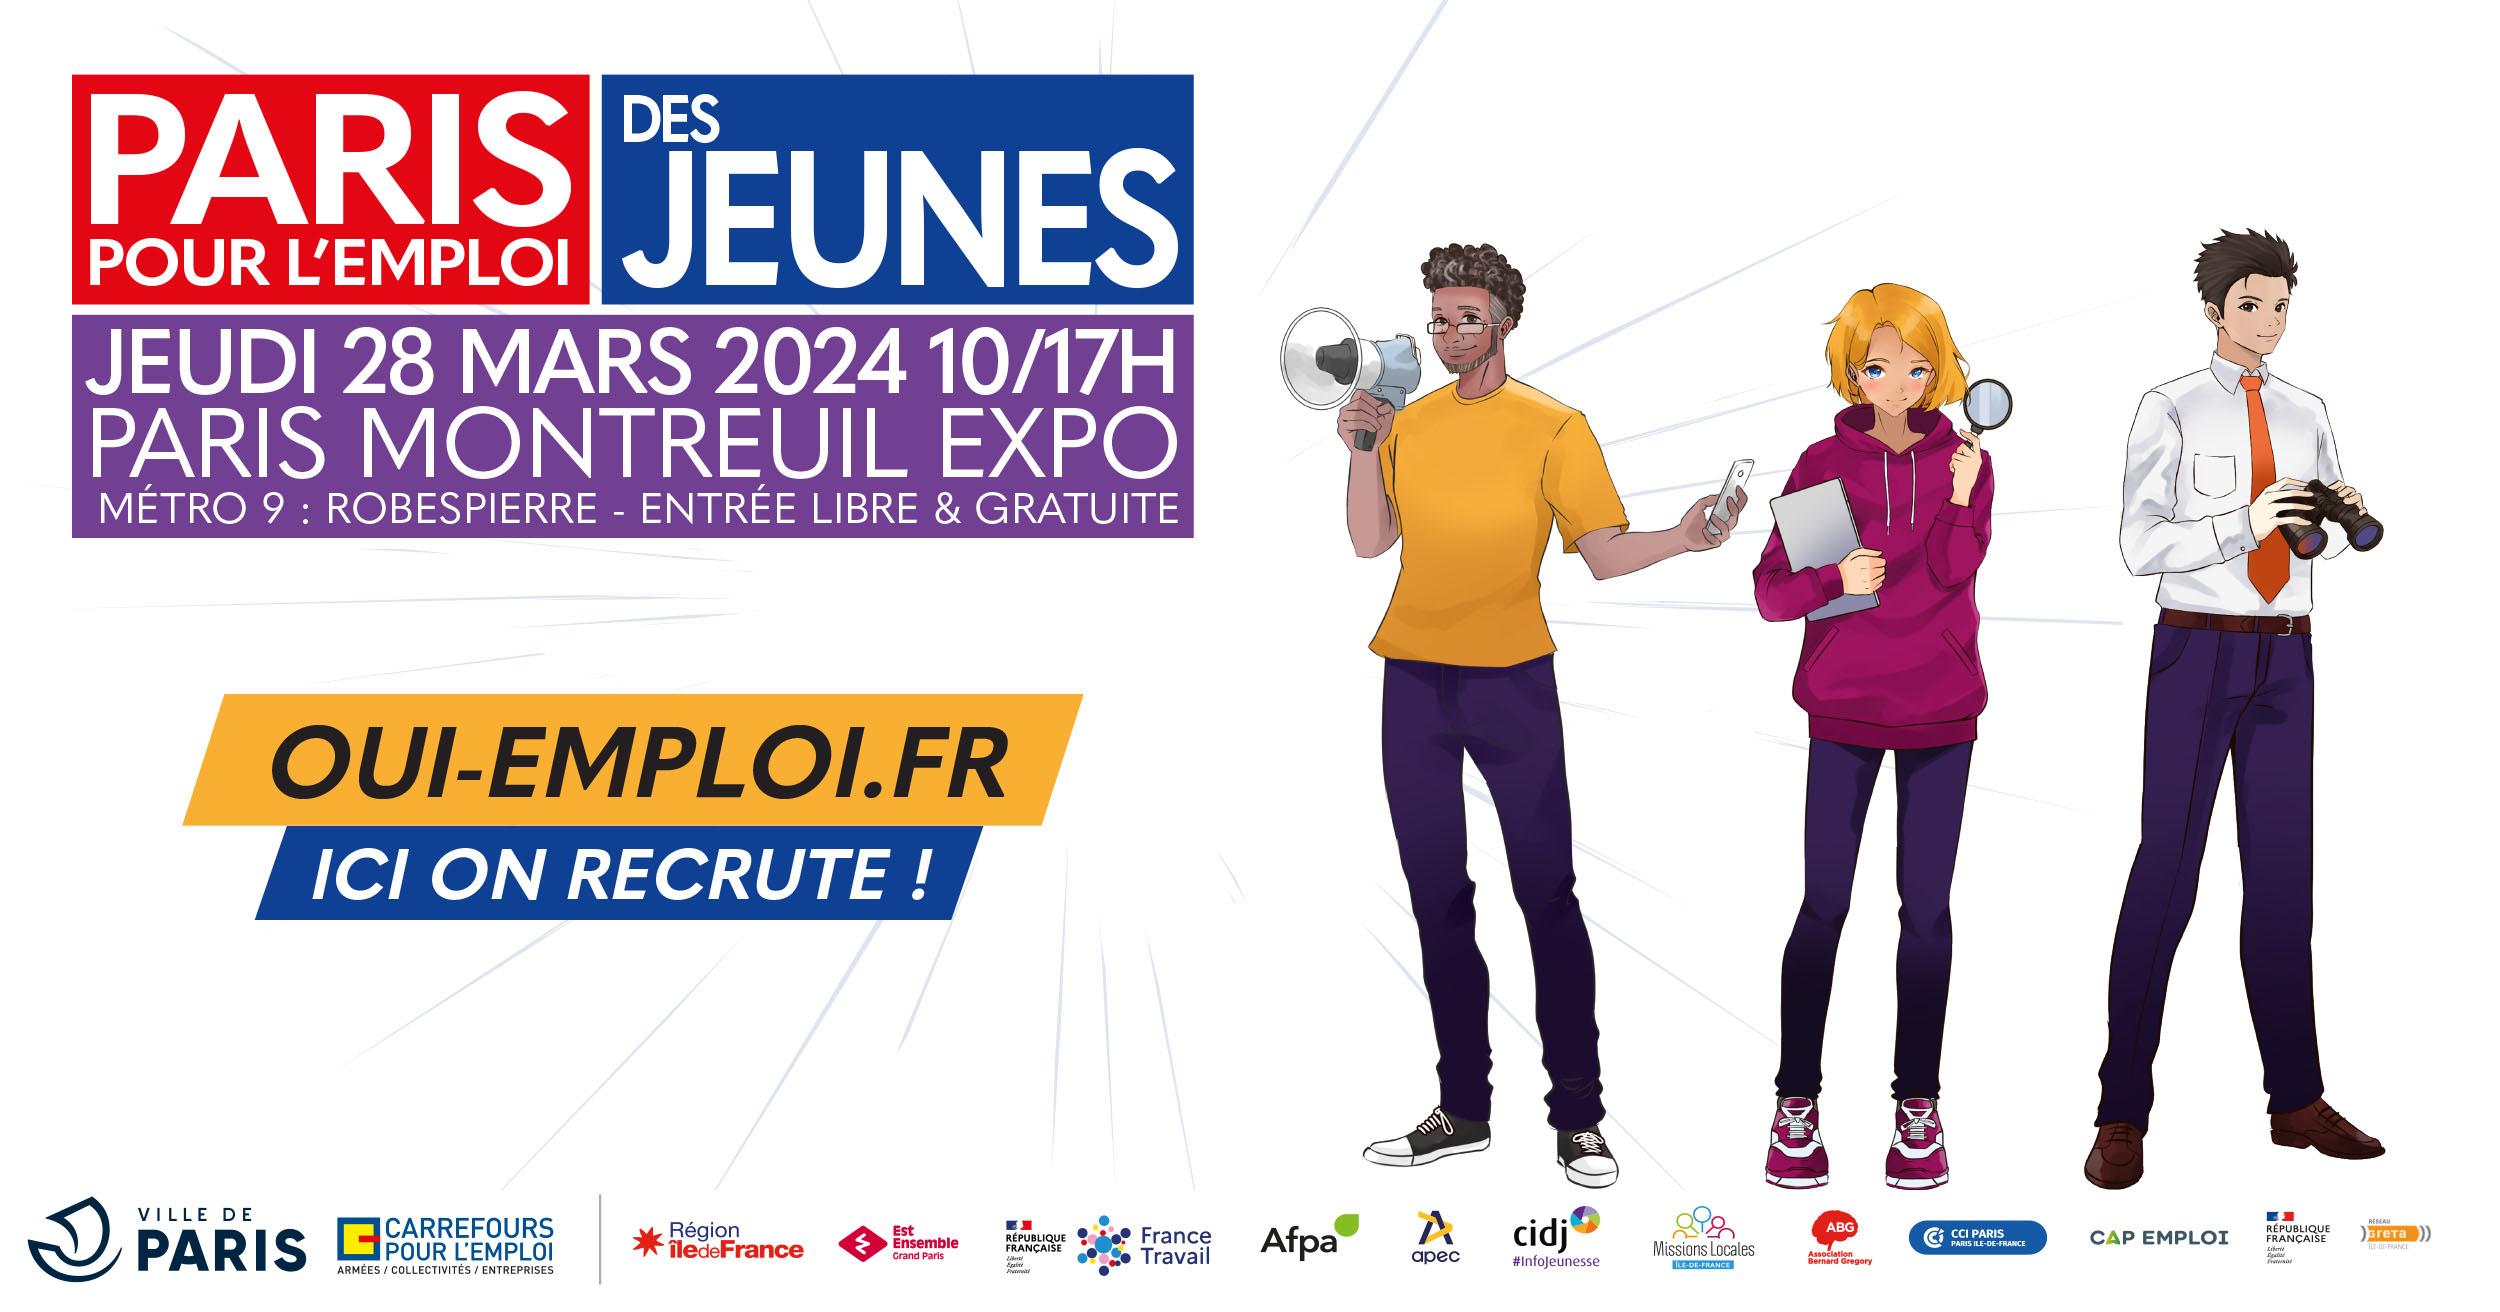 Évènement – Paris pour l'emploi des jeunes 